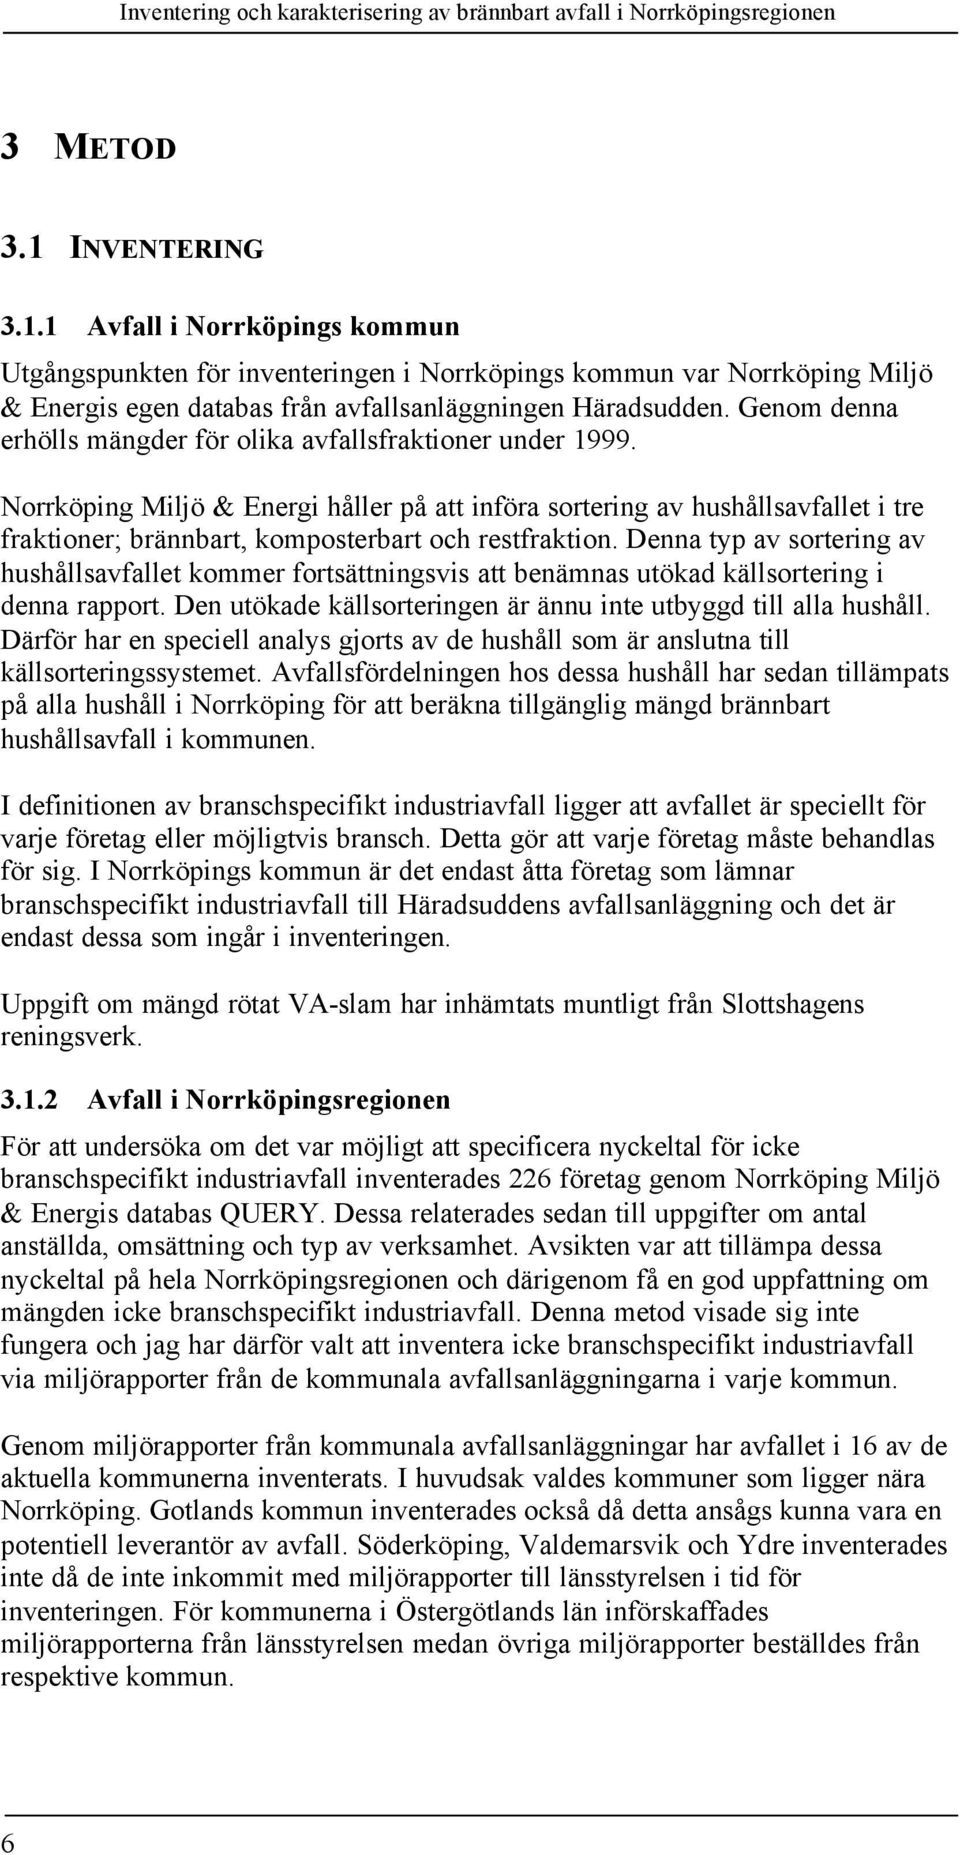 Norrköping Miljö & Energi håller på att införa sortering av hushållsavfallet i tre fraktioner; brännbart, komposterbart och restfraktion.